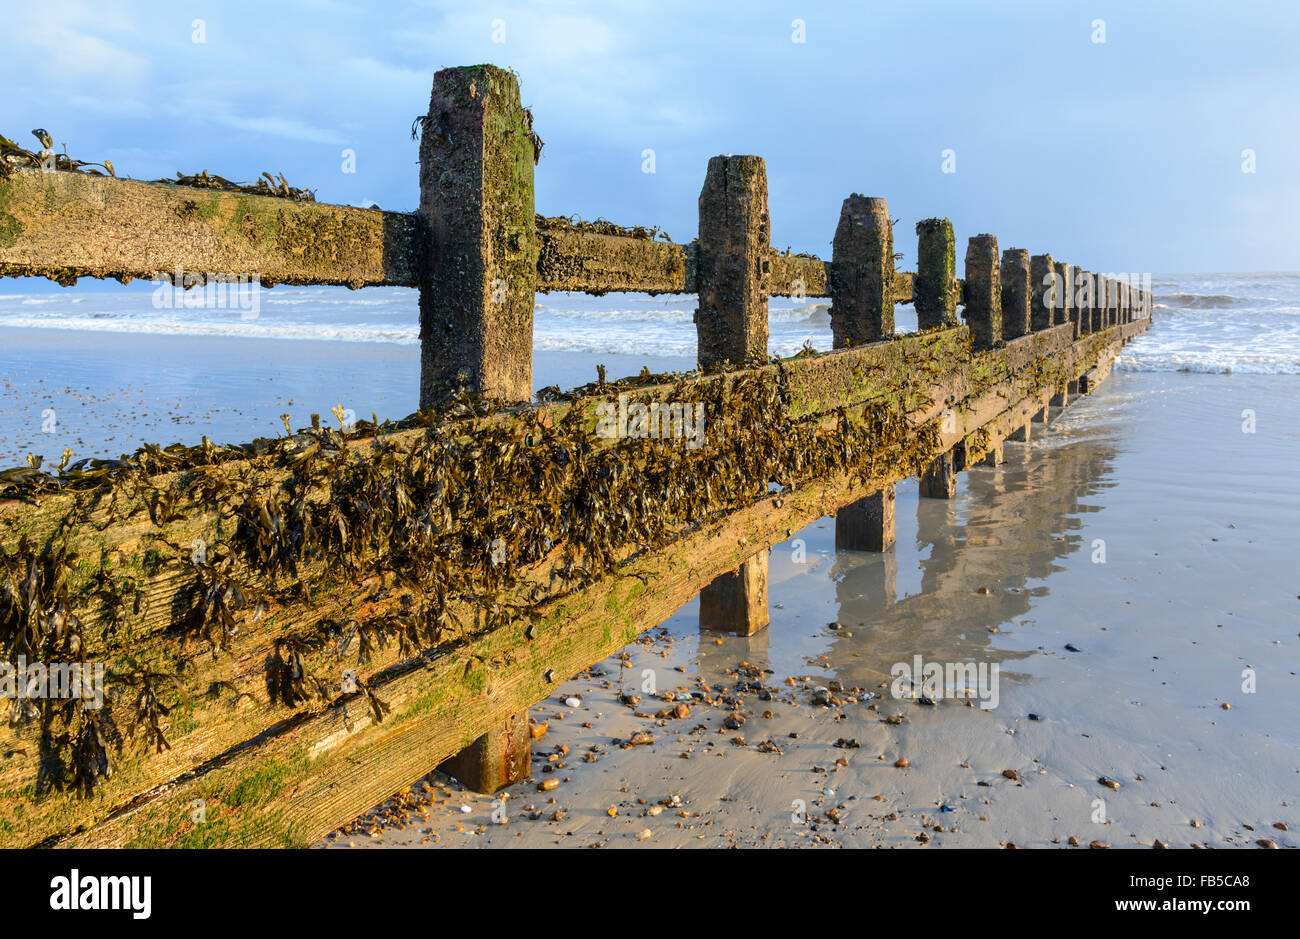 Holz- groyne (Leiste) auf einem Strand bei Ebbe an der Südküste von England, UK. Stockfoto